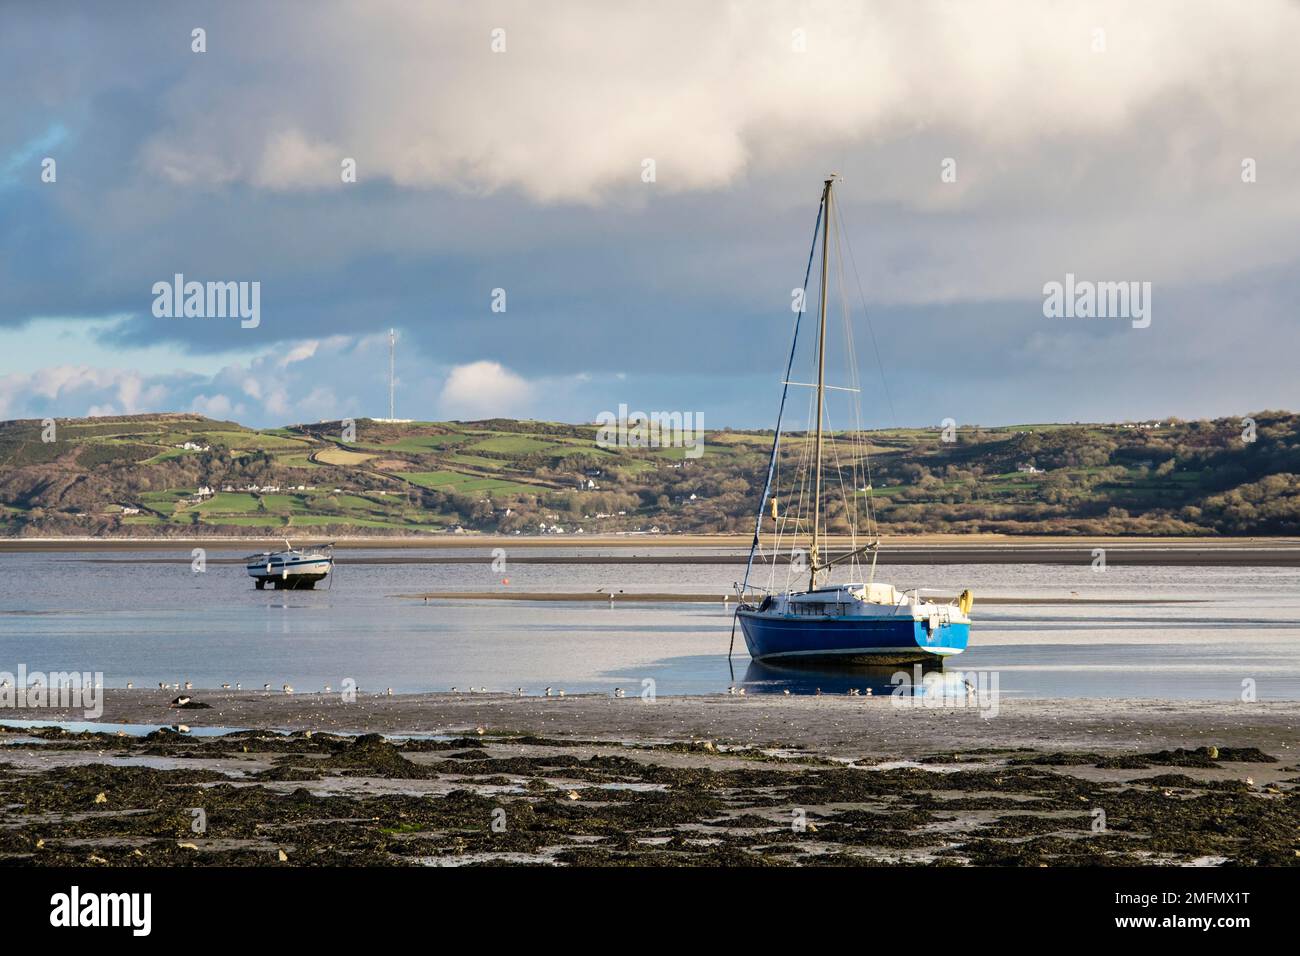 Les bateaux mis à la terre attendent que la marée entre et les oiseaux qui pataugent se nourrissent de boue sur le rivage. Red Wharf Bay (Traeth Coch), Benllech, île d'Anglesey, pays de Galles, Royaume-Uni Banque D'Images